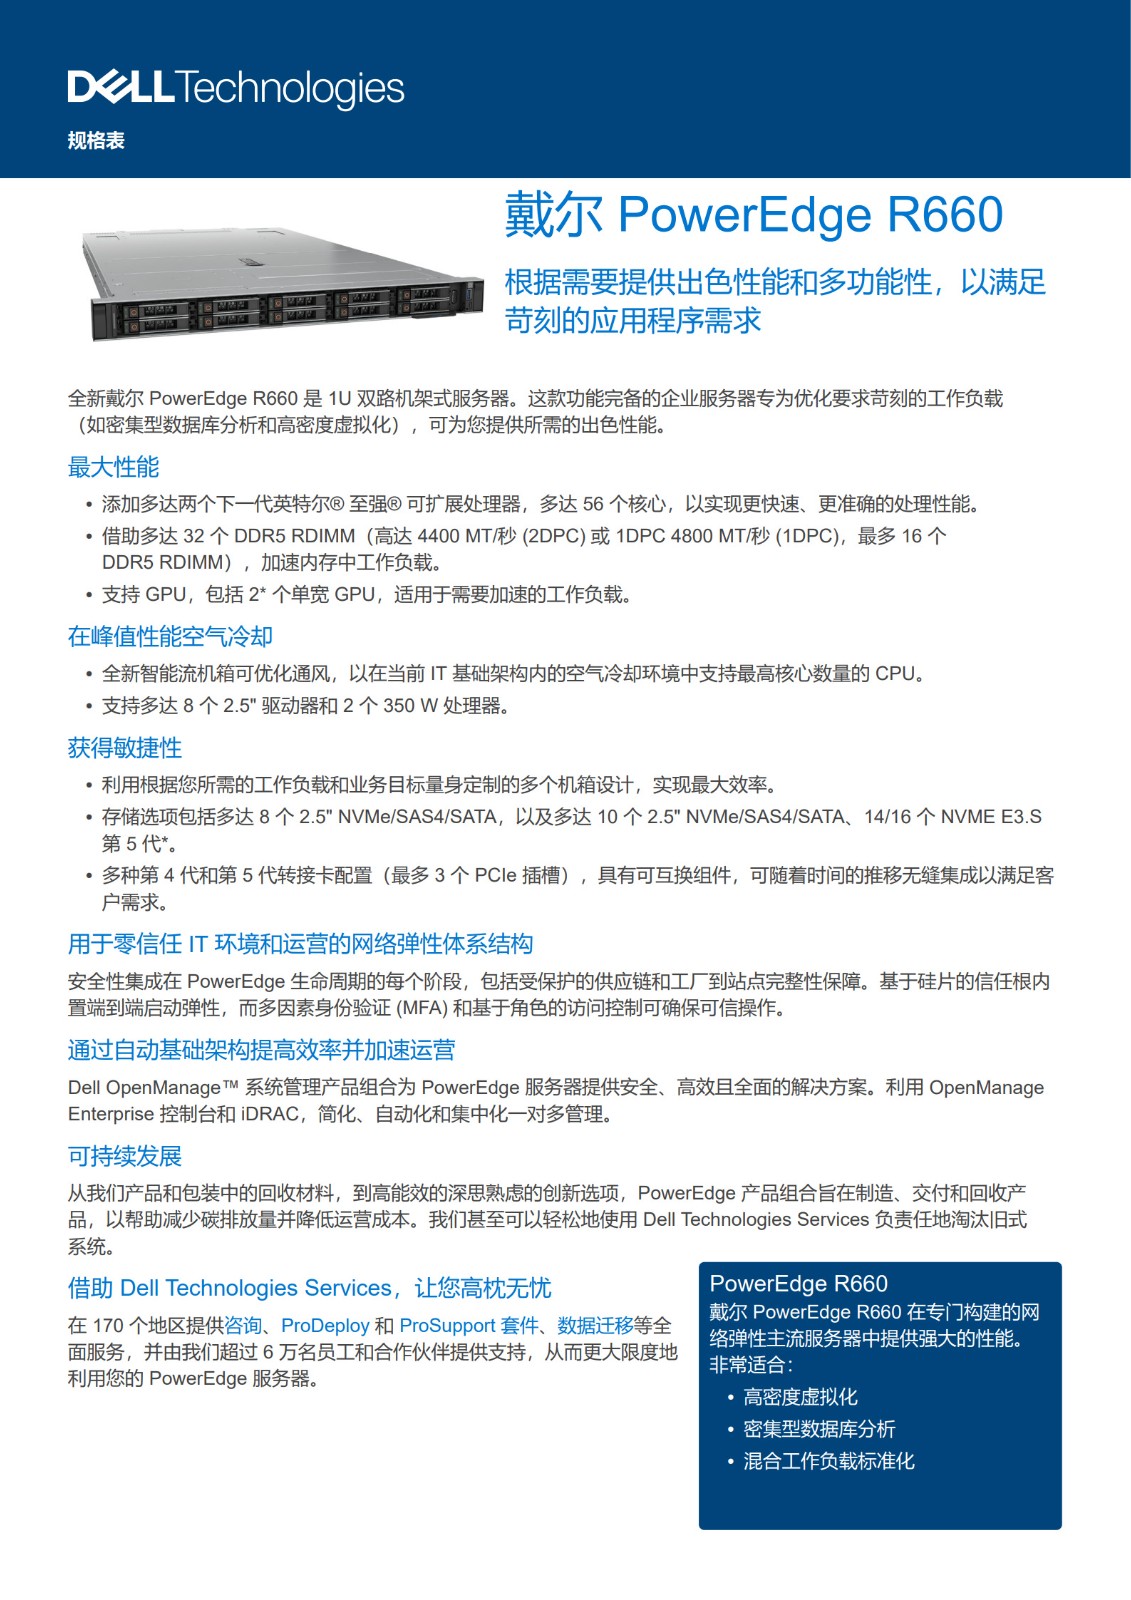 Dell PowerEdge-R660-Spec-Sheet_CN_1.jpg